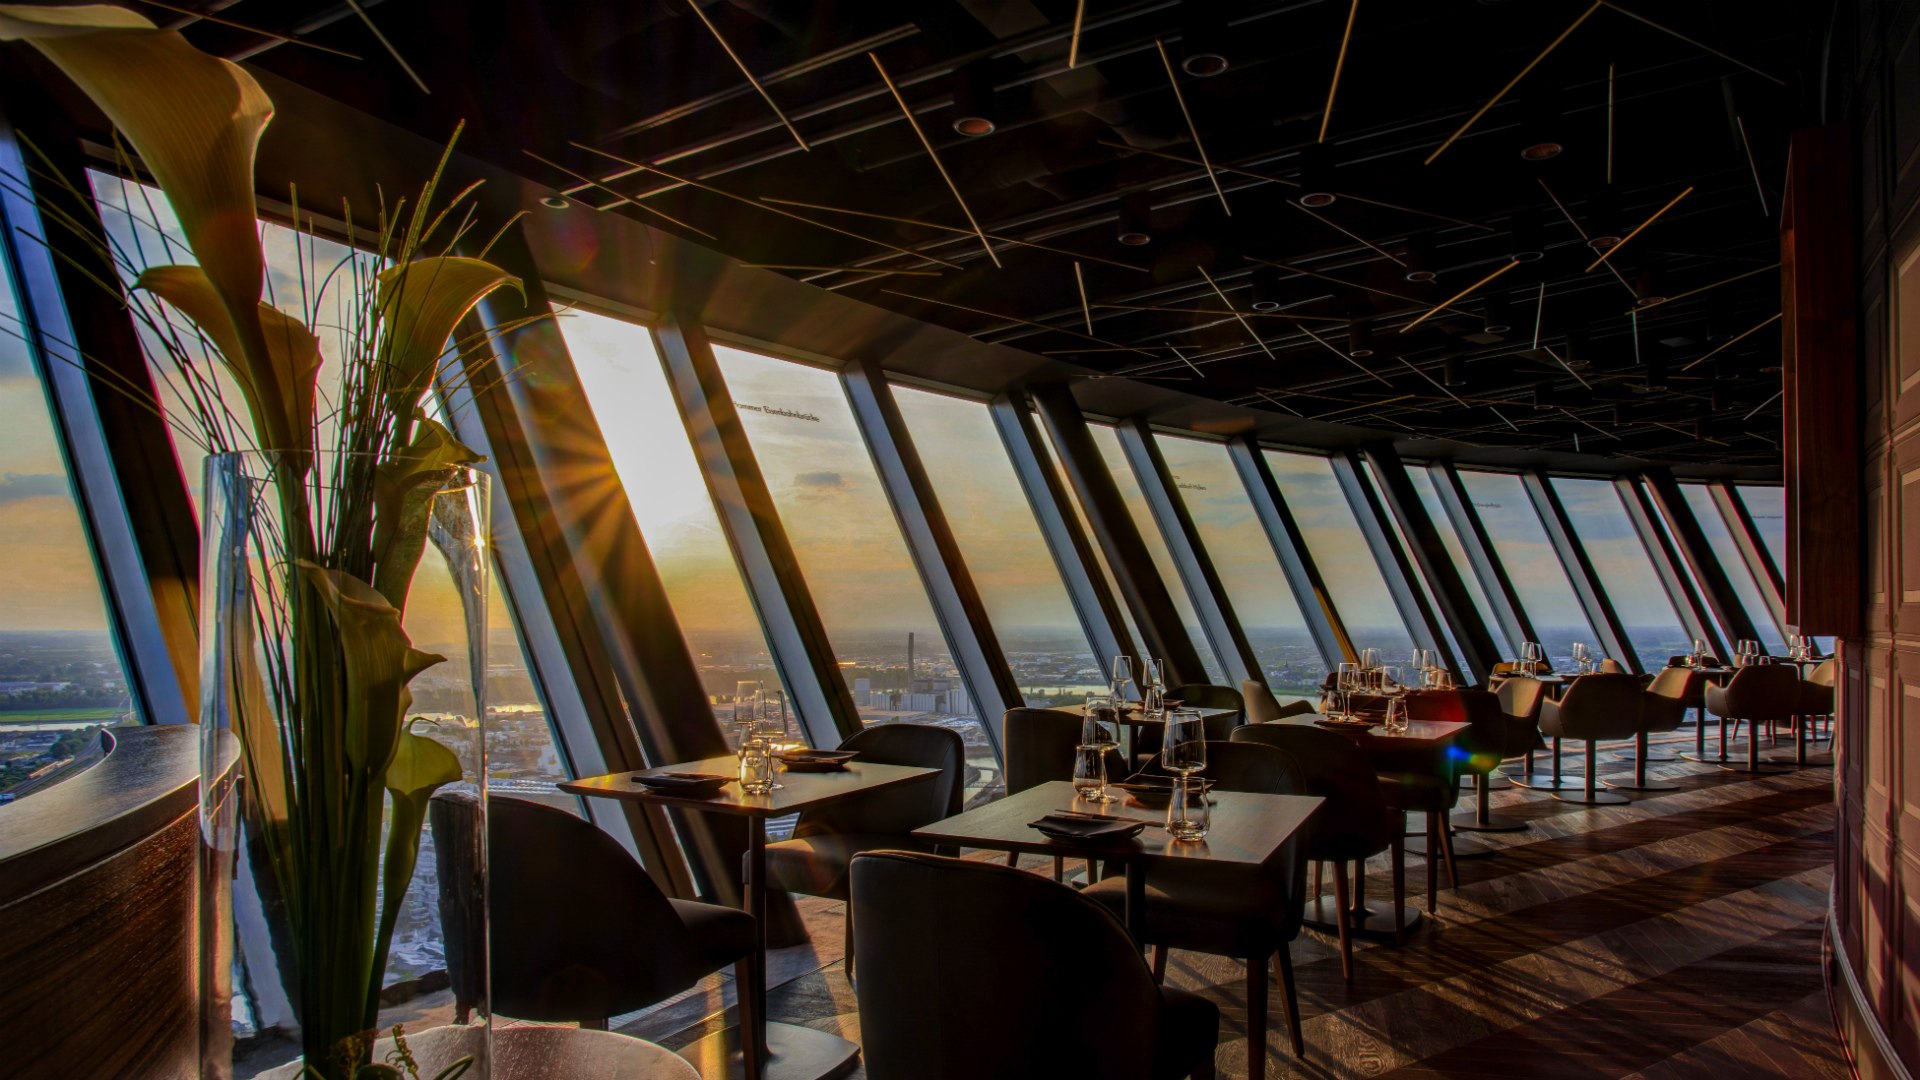 Das Qomo im Rheinturm in Düsseldorf bietet in rund 170 Metern Höhe japanische Küche, leckere Cocktails und einen fantastischen Blick über die Stadt und das Umland., © Jens Schwarck